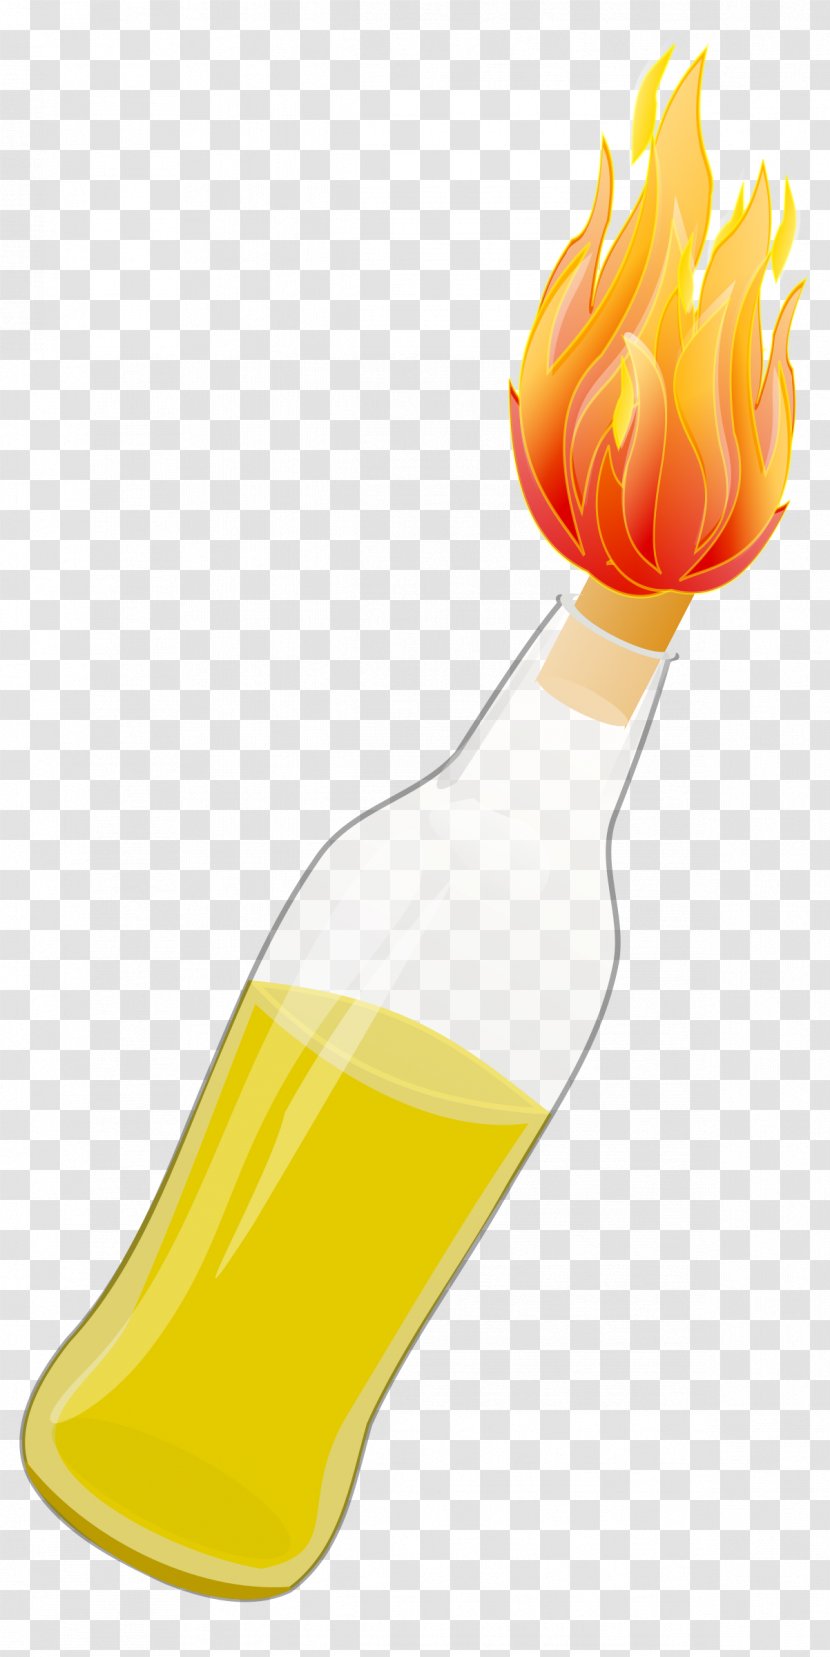 Molotov Cocktail Bottle Clip Art - Bomb - Fancy Transparent PNG